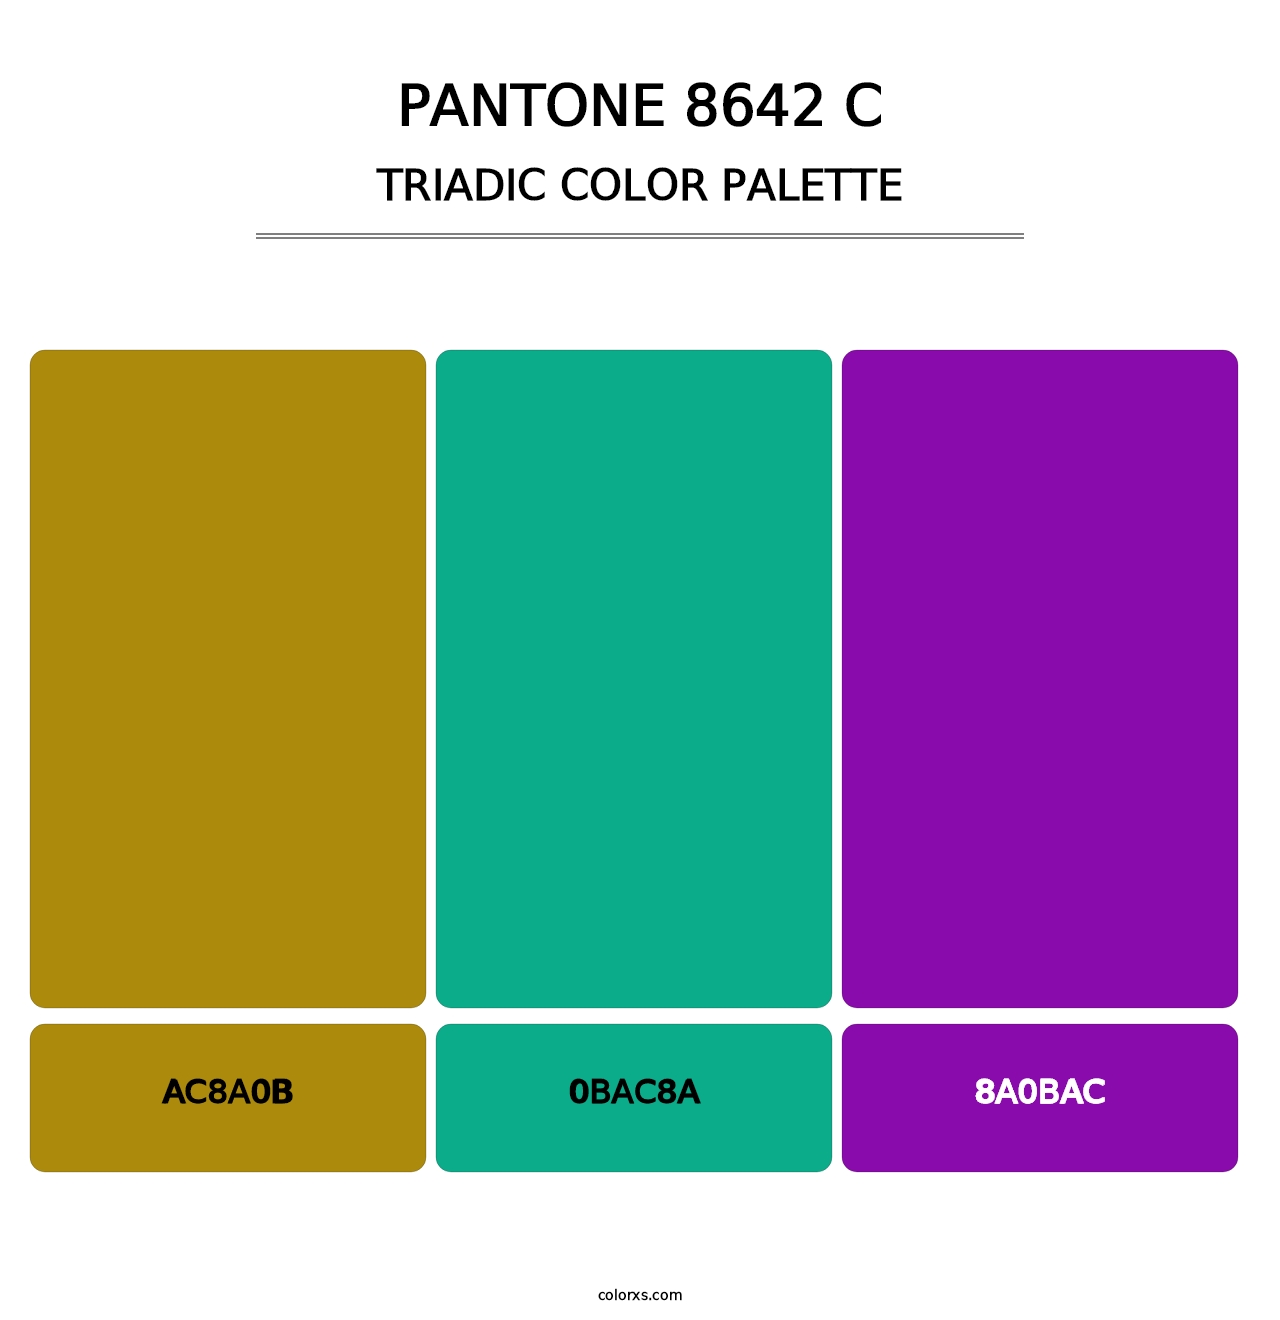 PANTONE 8642 C - Triadic Color Palette